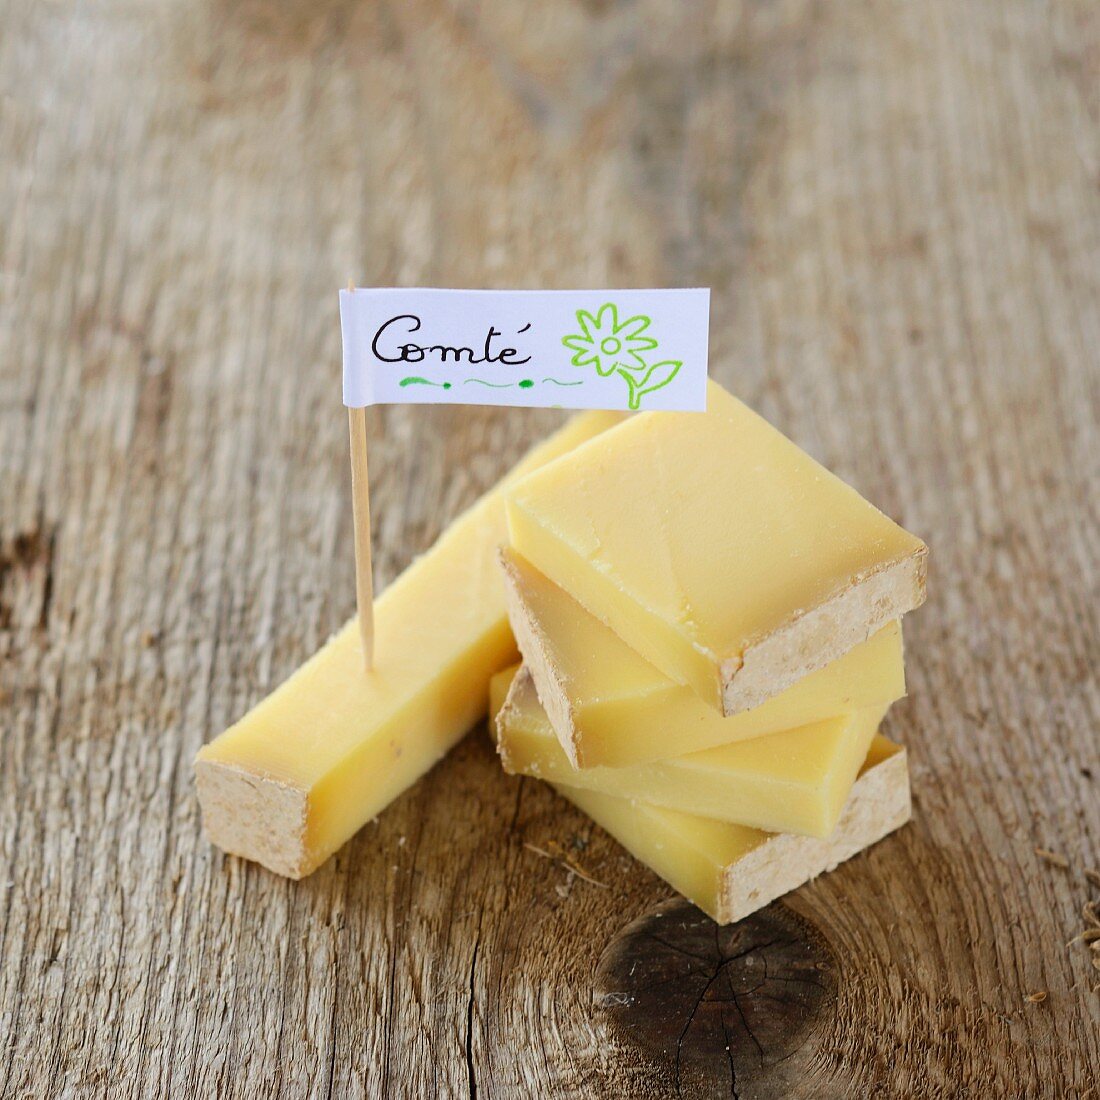 A piece of Comté cheese